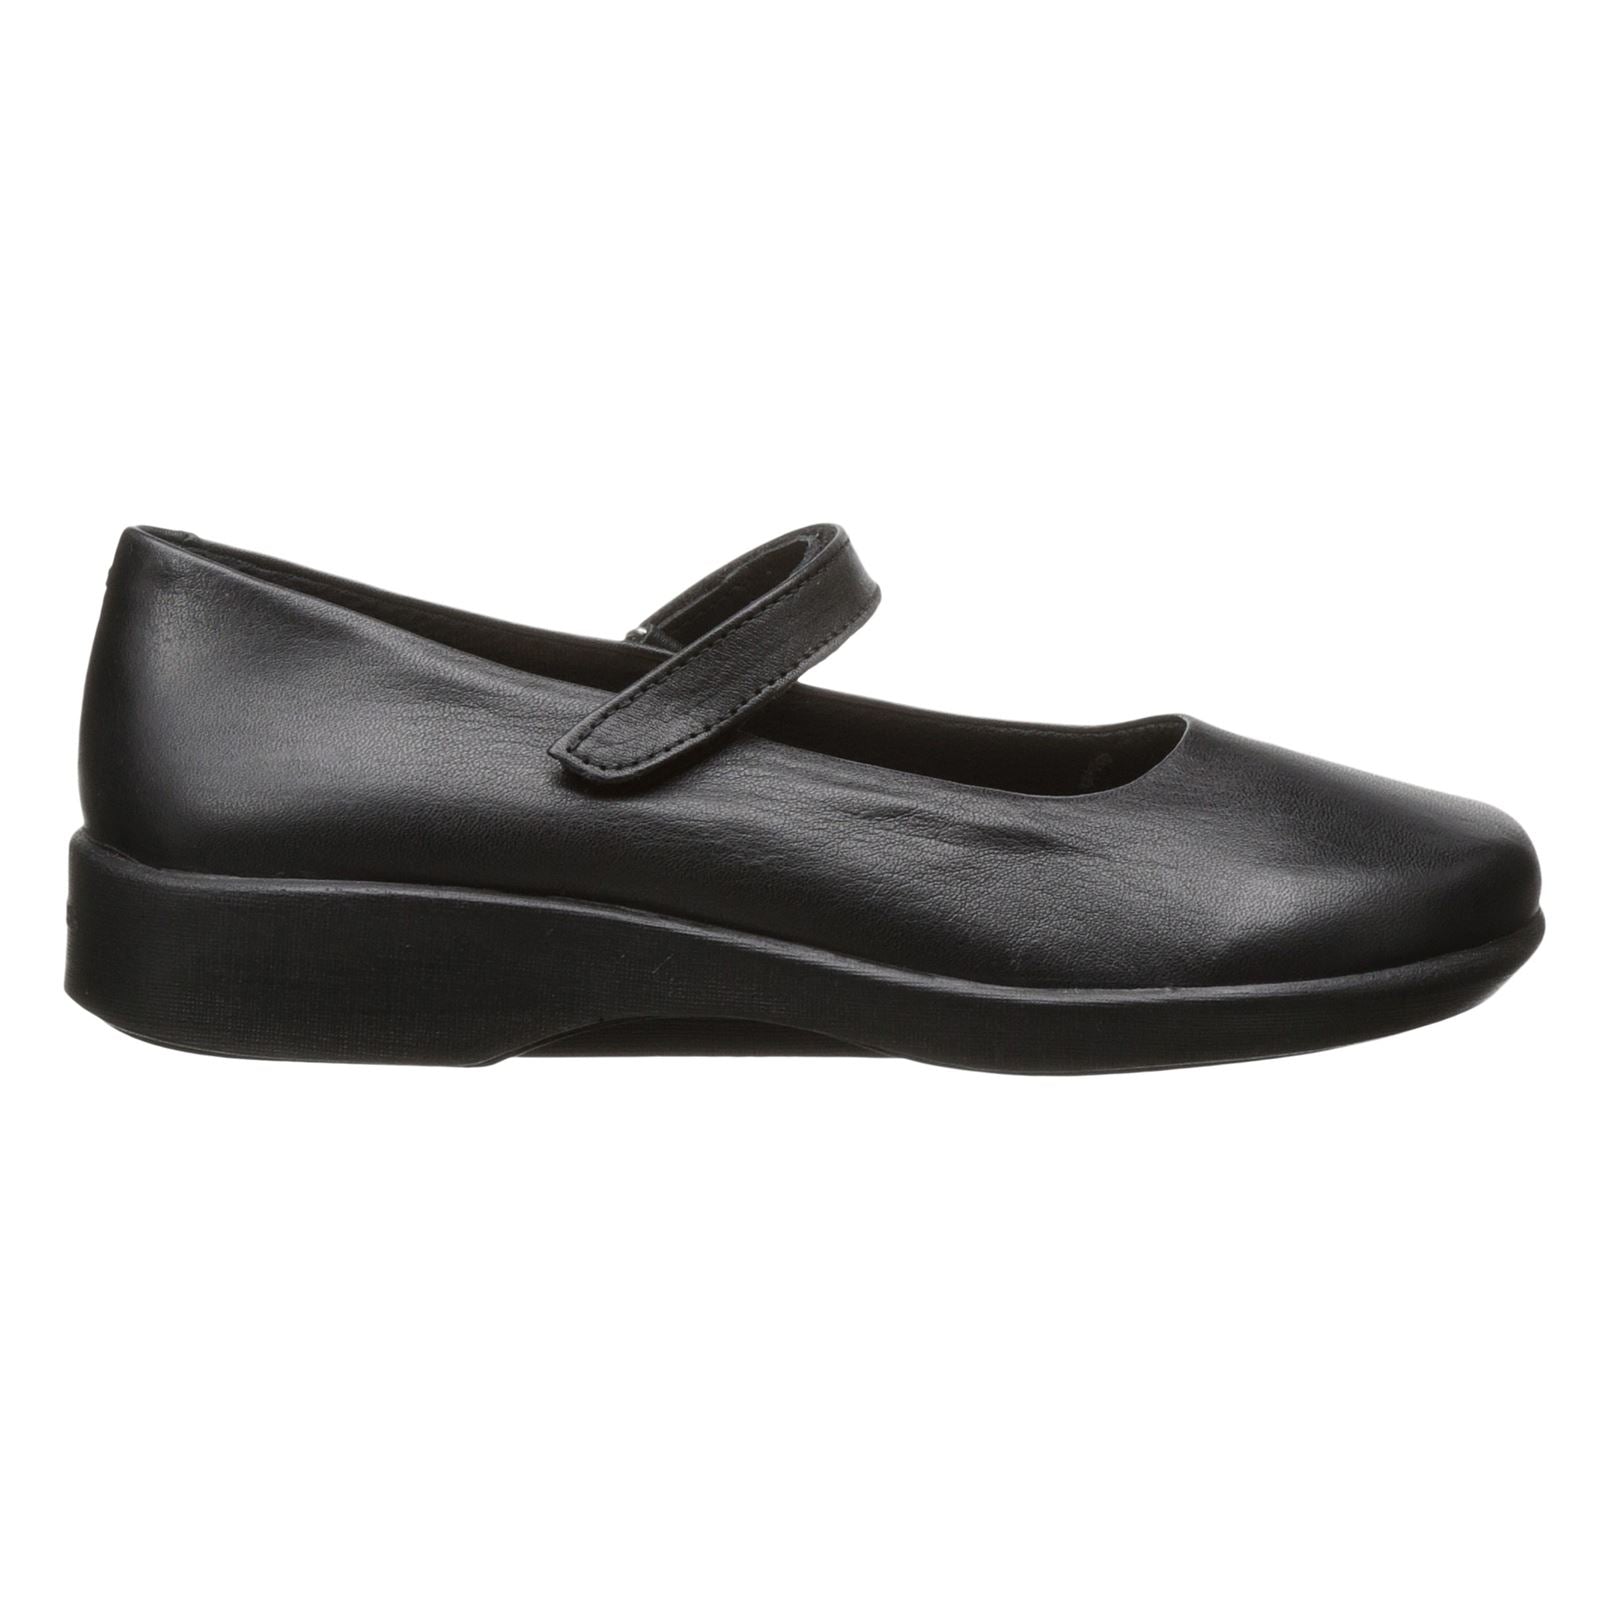 Arcopedico Womens 7151 Scala Black Leather Shoes - UK 5